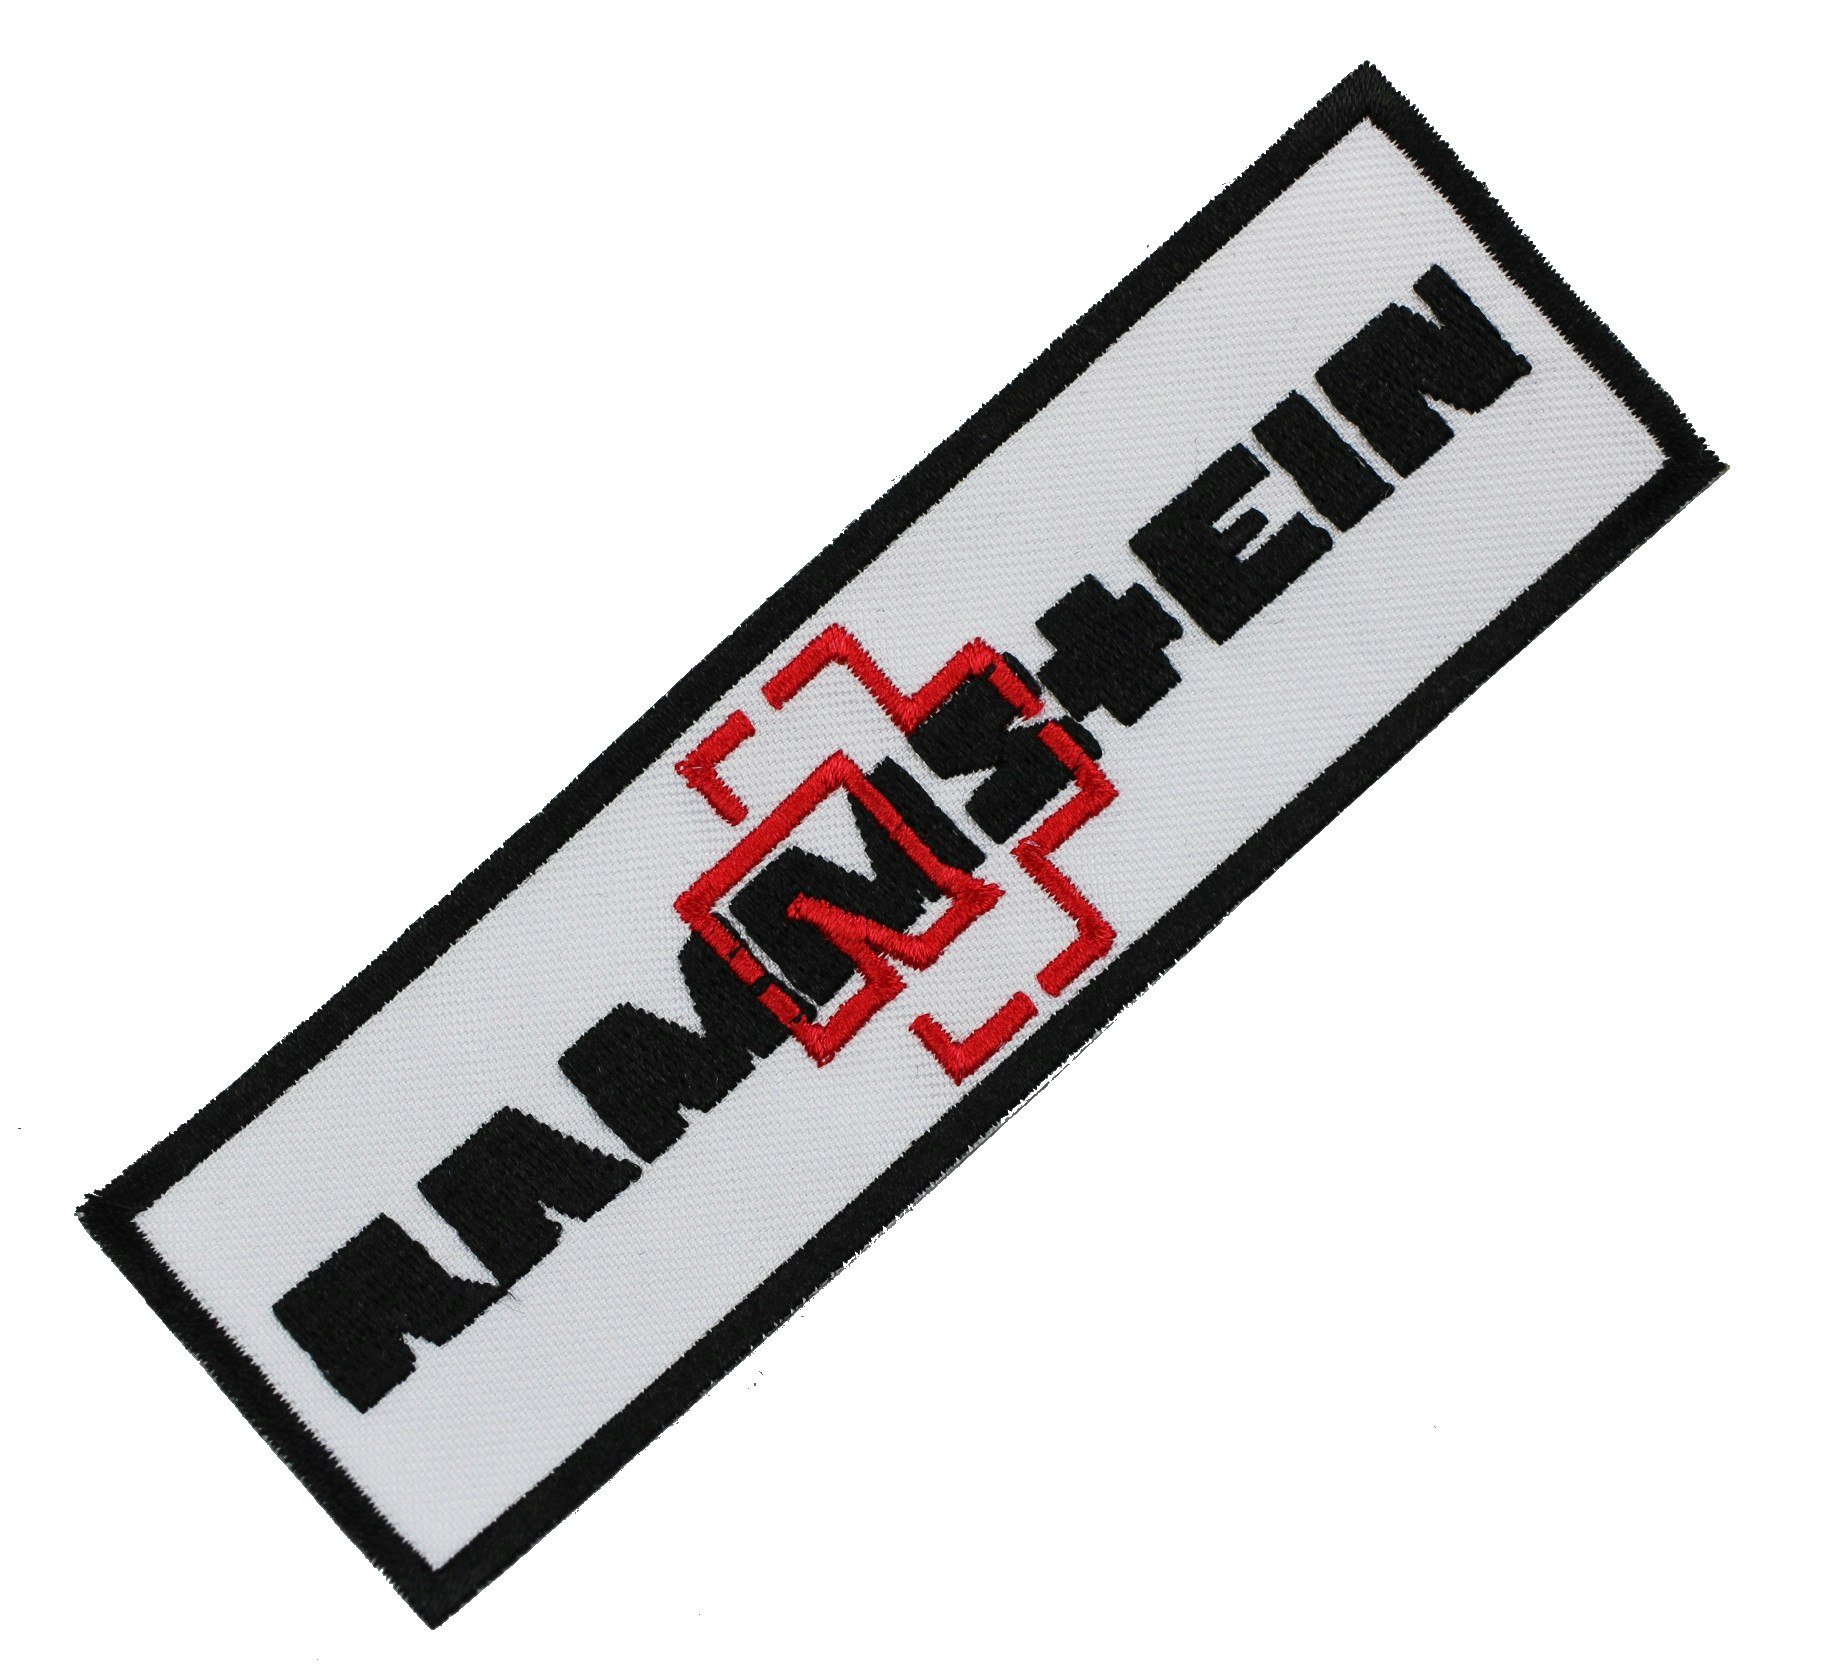 Rammstein white logo patch